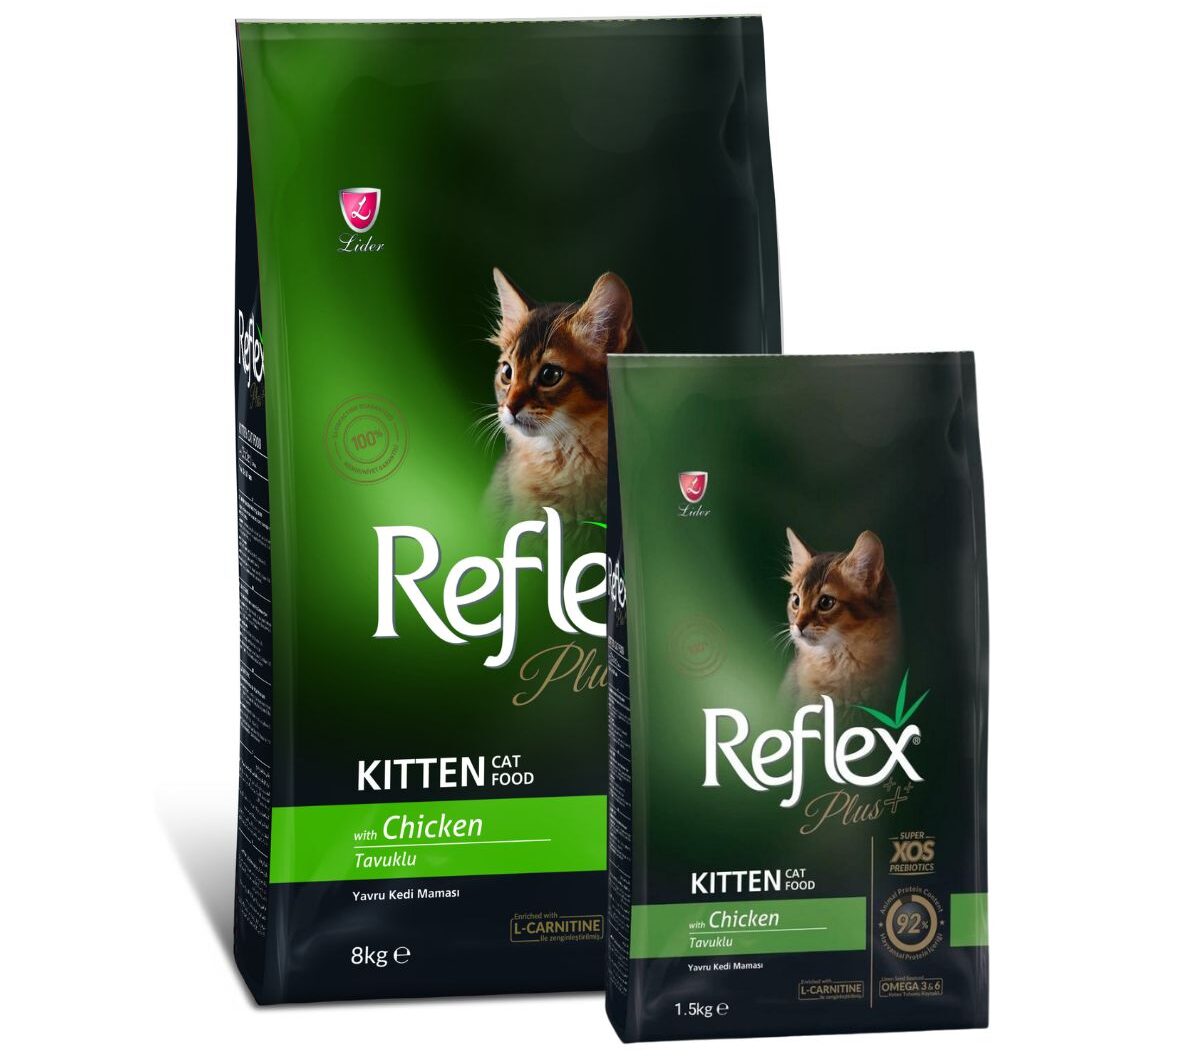 Sản phẩm thức ăn hạt cao cấp Reflex Plus Kitten cho mèo con được sản xuất và nhập khẩu từ Thổ Nhĩ Kỳ. dành riêng cho mèo con từ 2 đến 12 tháng tuổi.